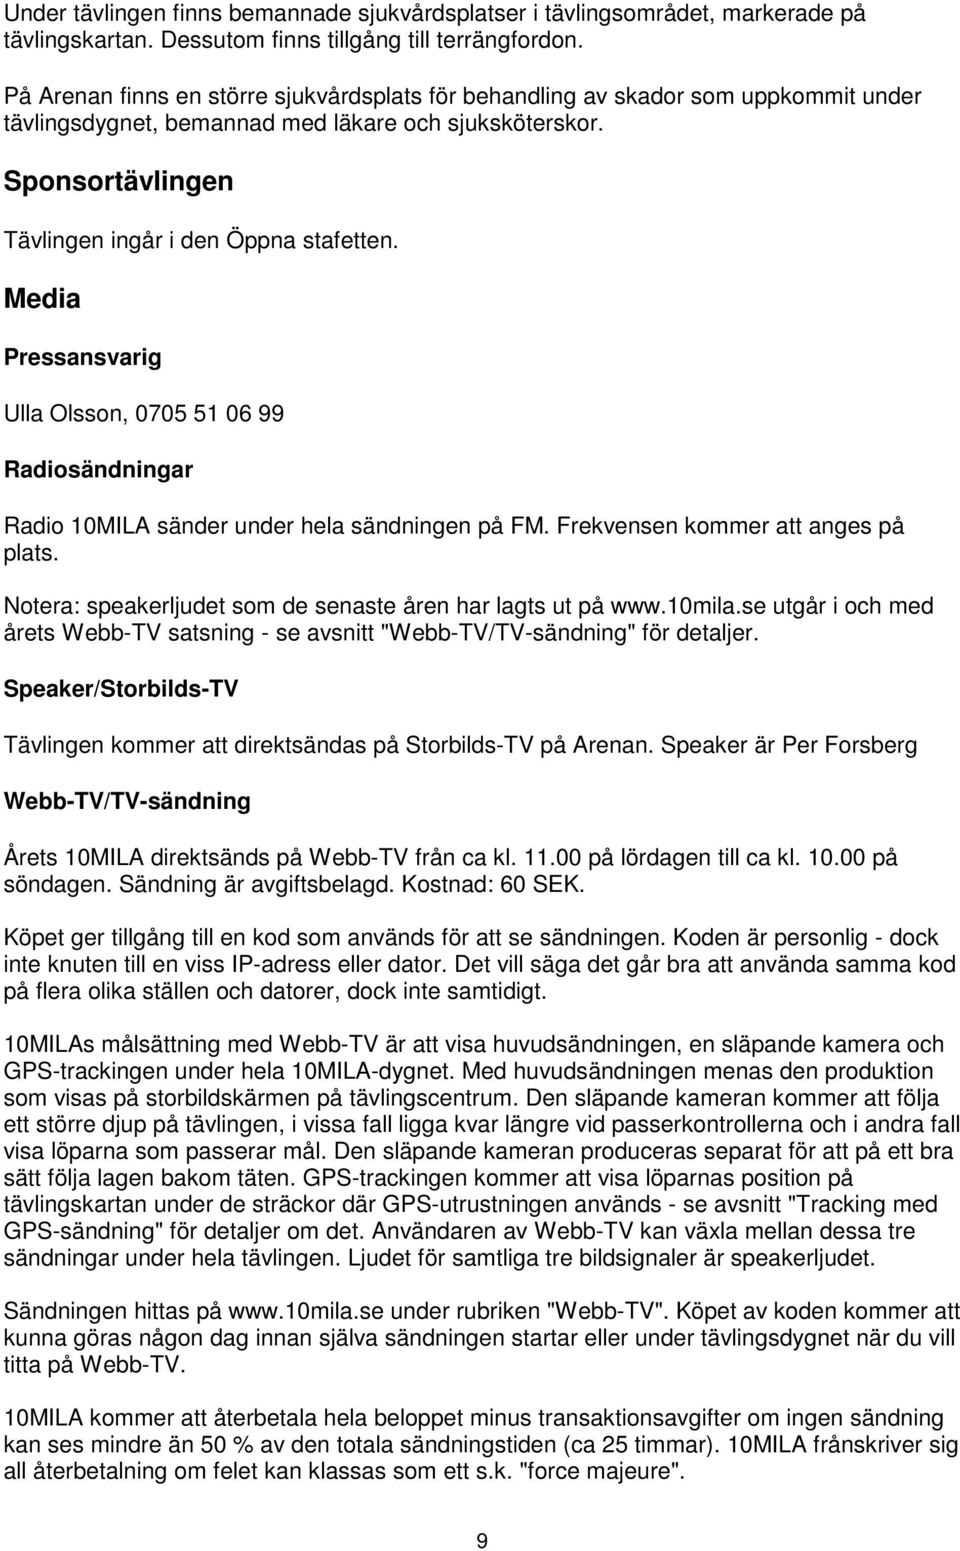 Media Pressansvarig Ulla Olsson, 0705 51 06 99 Radiosändningar Radio 10MILA sänder under hela sändningen på FM. Frekvensen kommer att anges på plats.